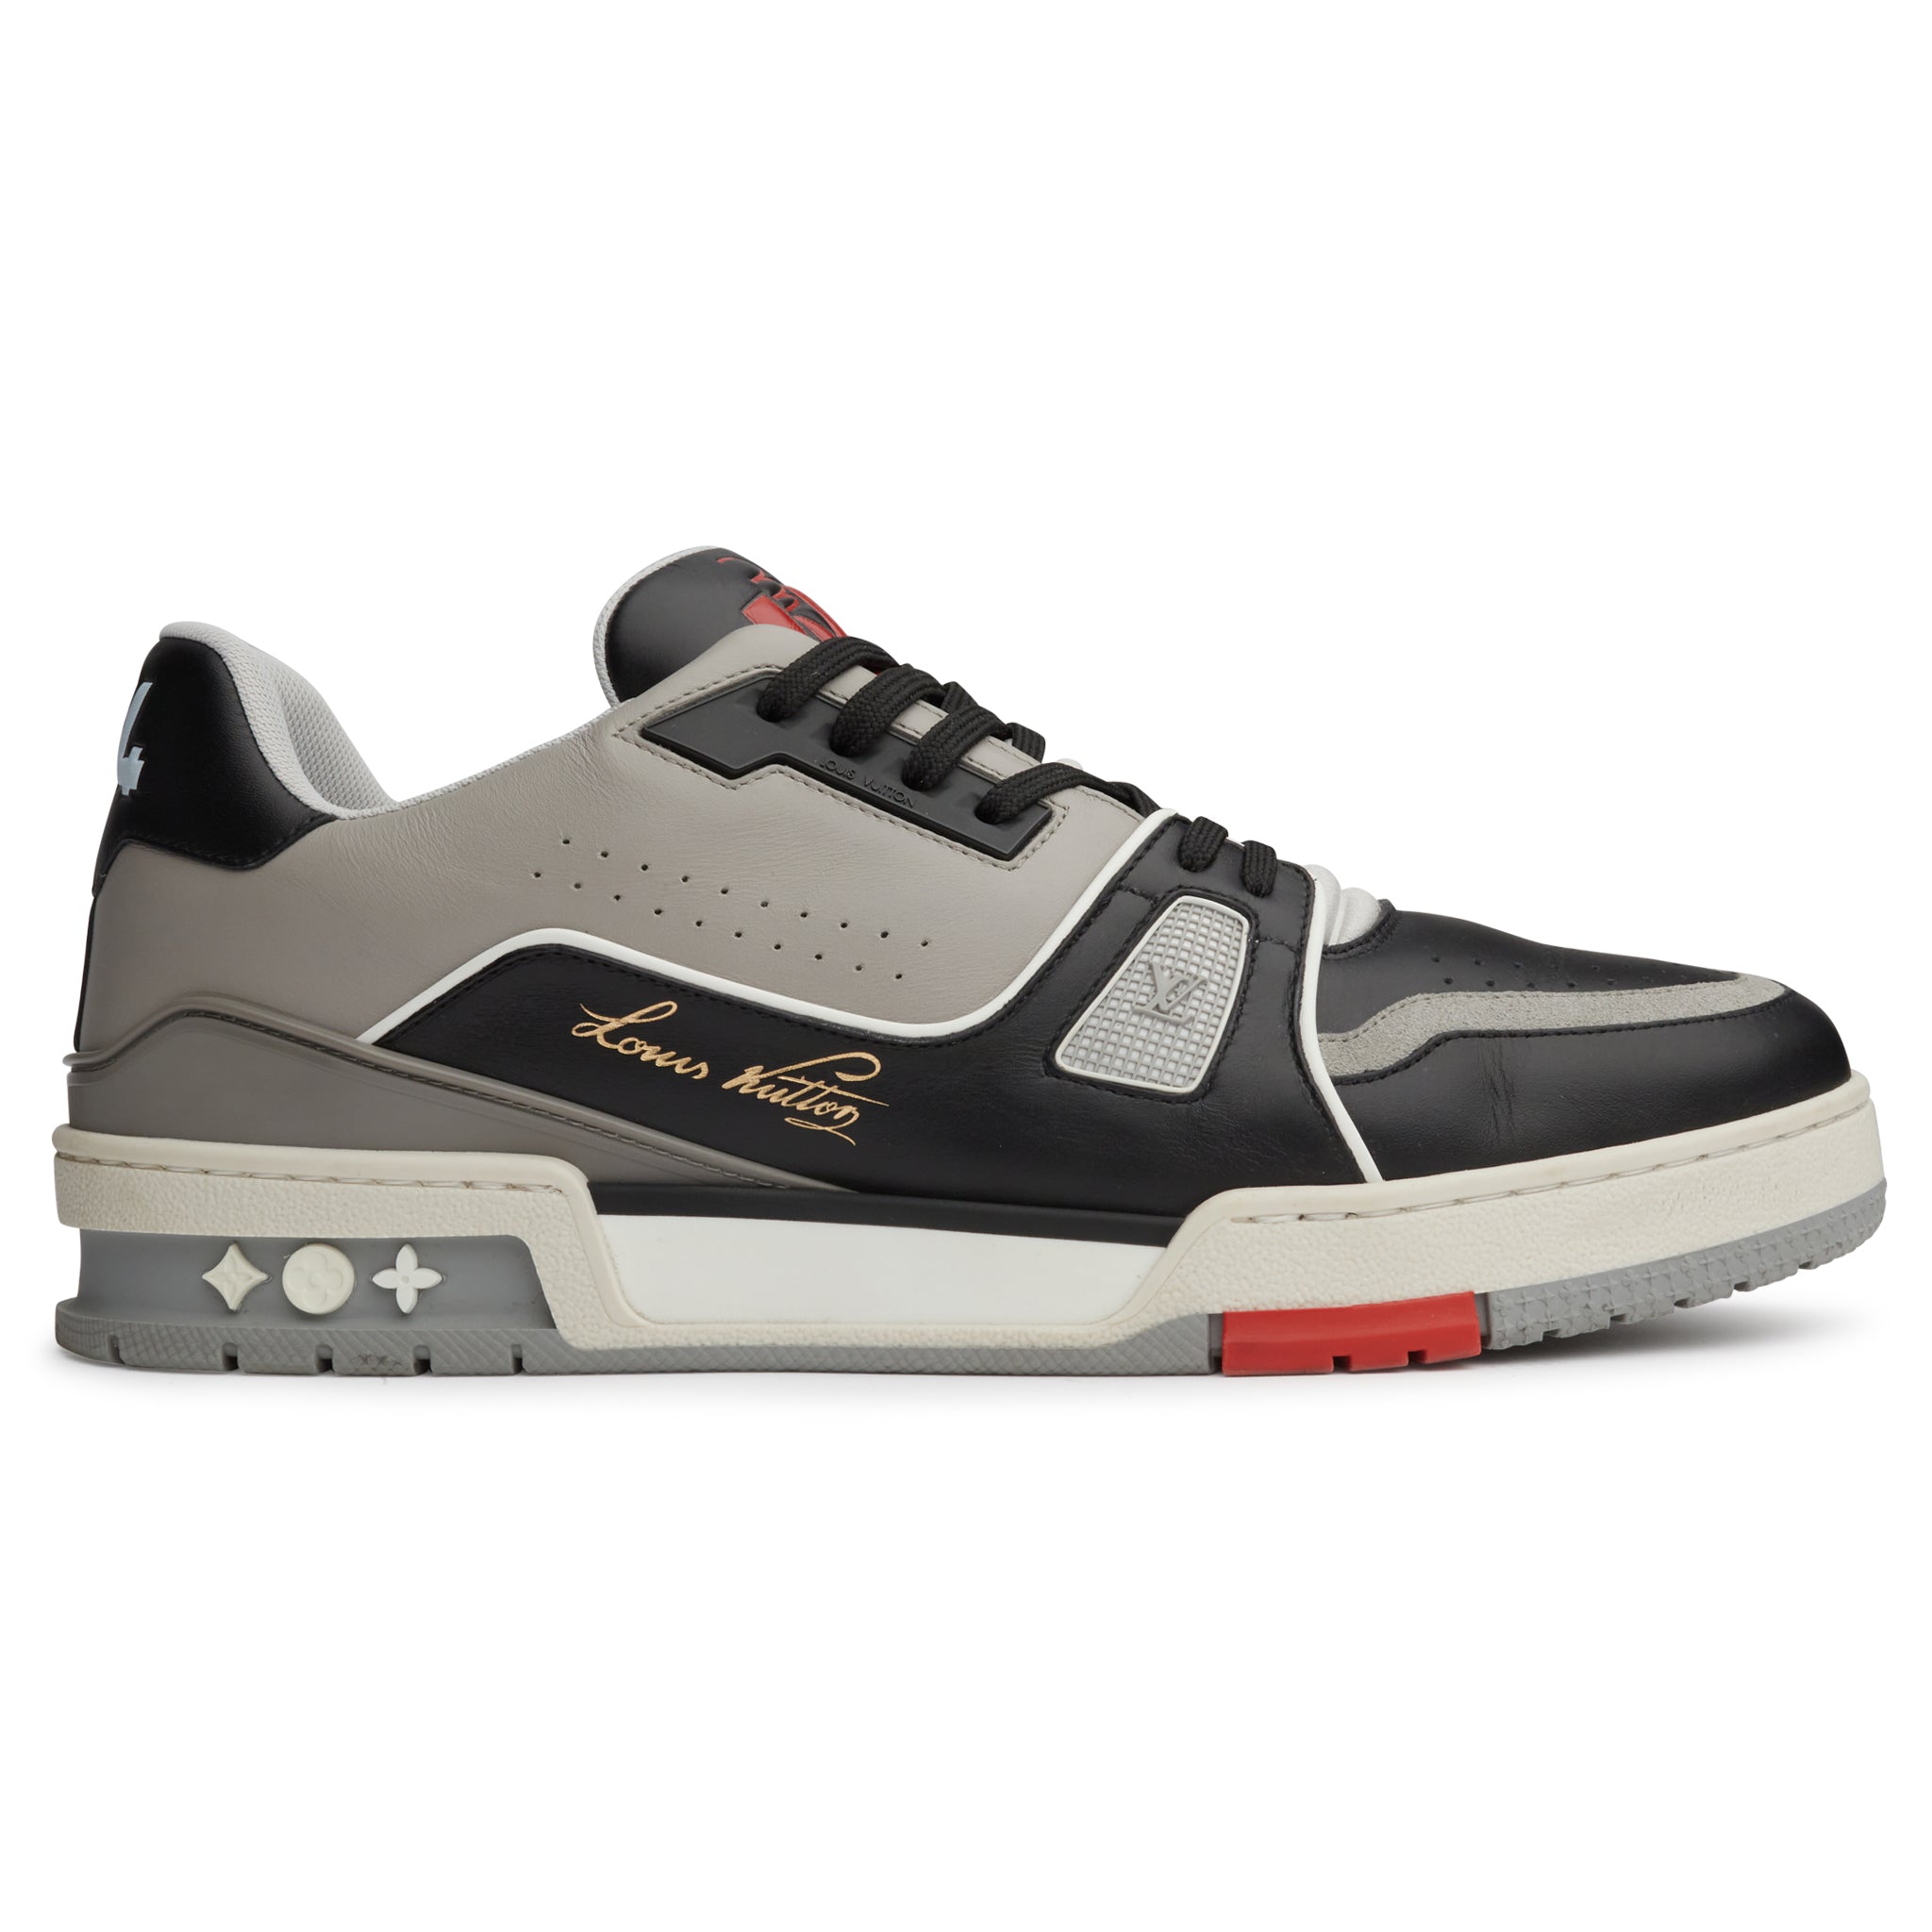 Louis Vuitton, Shoes, Authentic Louis Vuitton Vnr Knit Mesh Sneakers Shoe  Black White Gray Trainers Lv